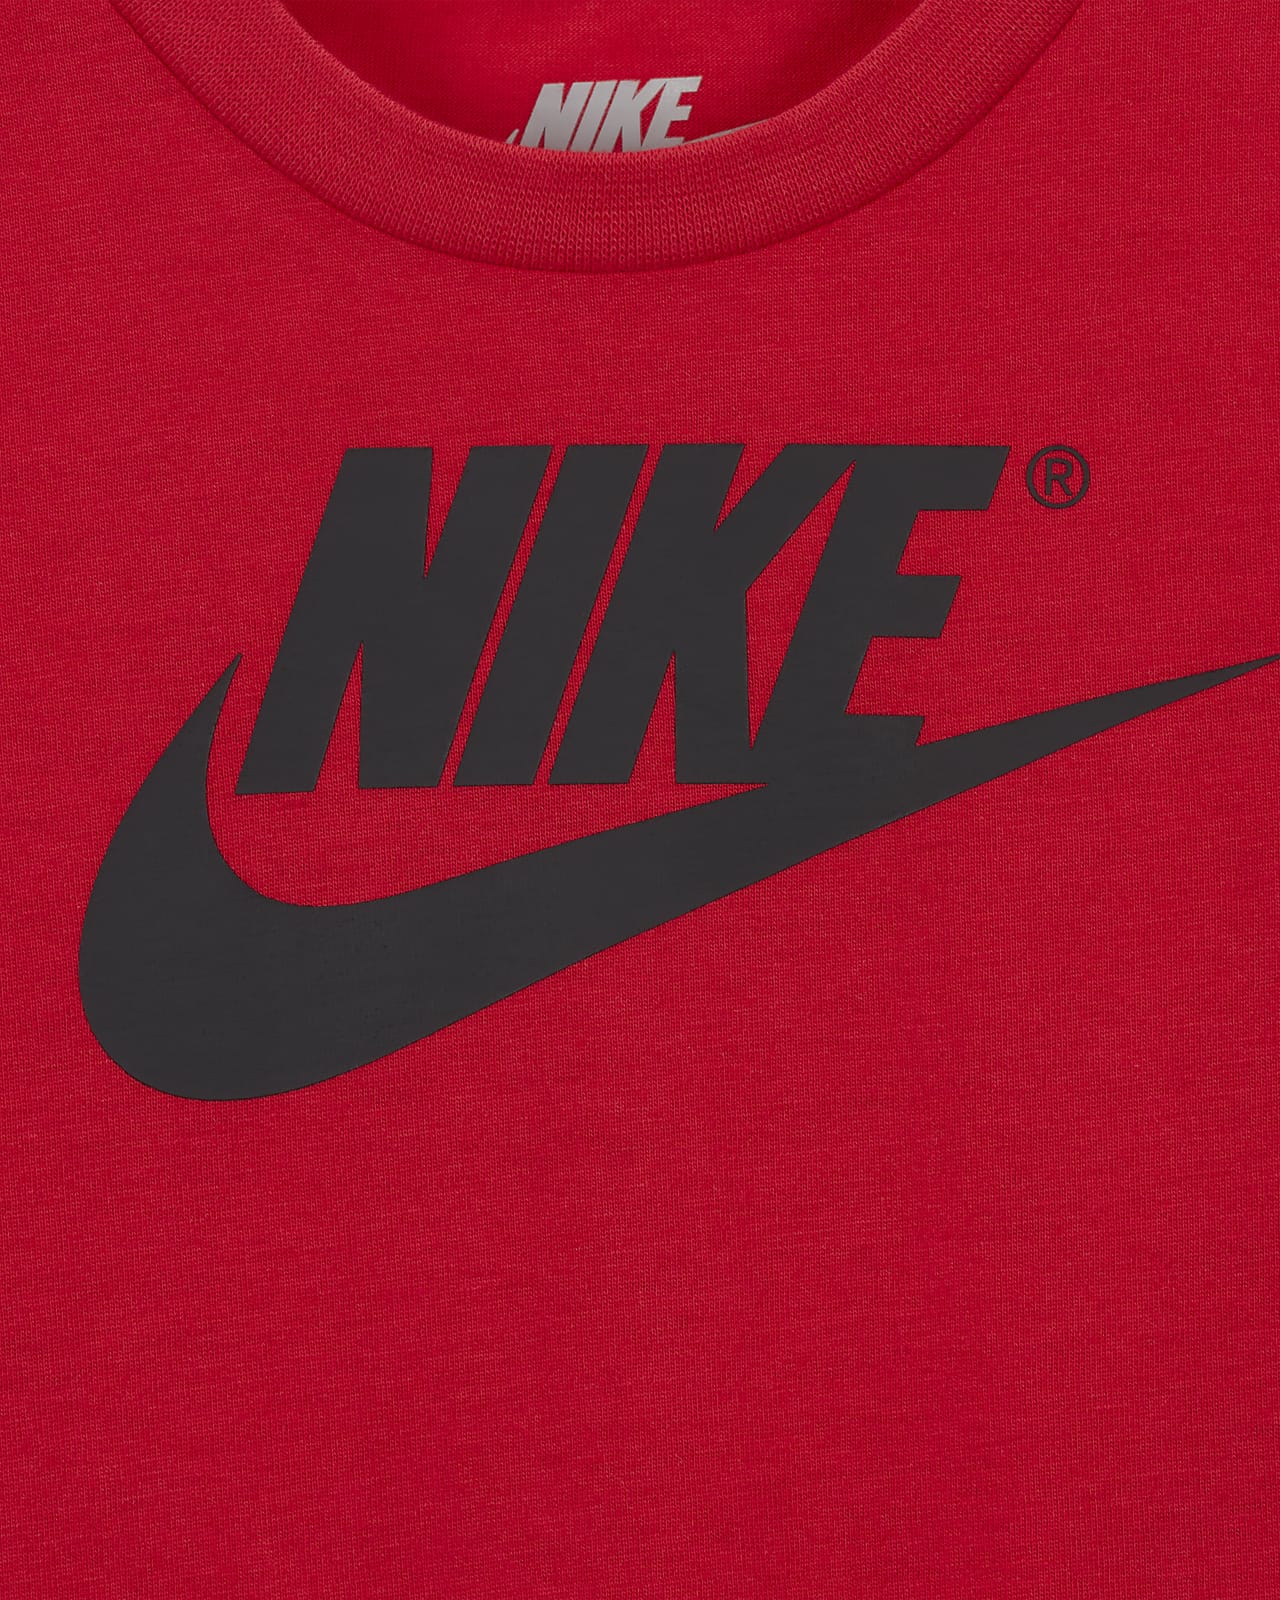 Ensemble tee-shirt et short Nike pour Bébé (12 - 24 mois)